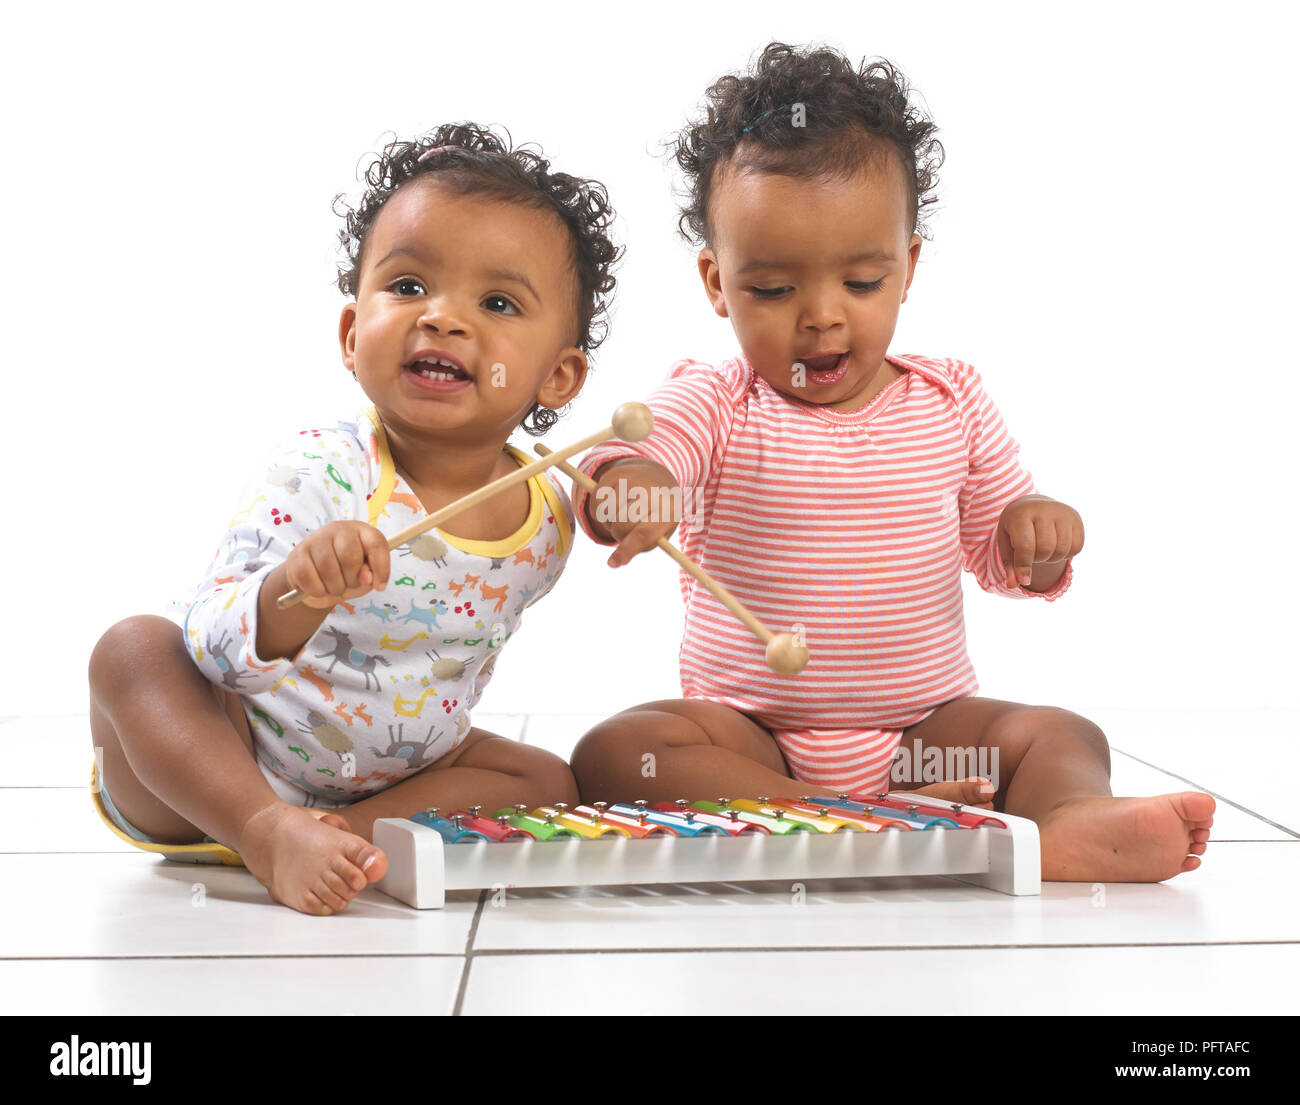 Lits jumeaux fille et garçon jouant avec le xylophone, 18 mois Banque D'Images